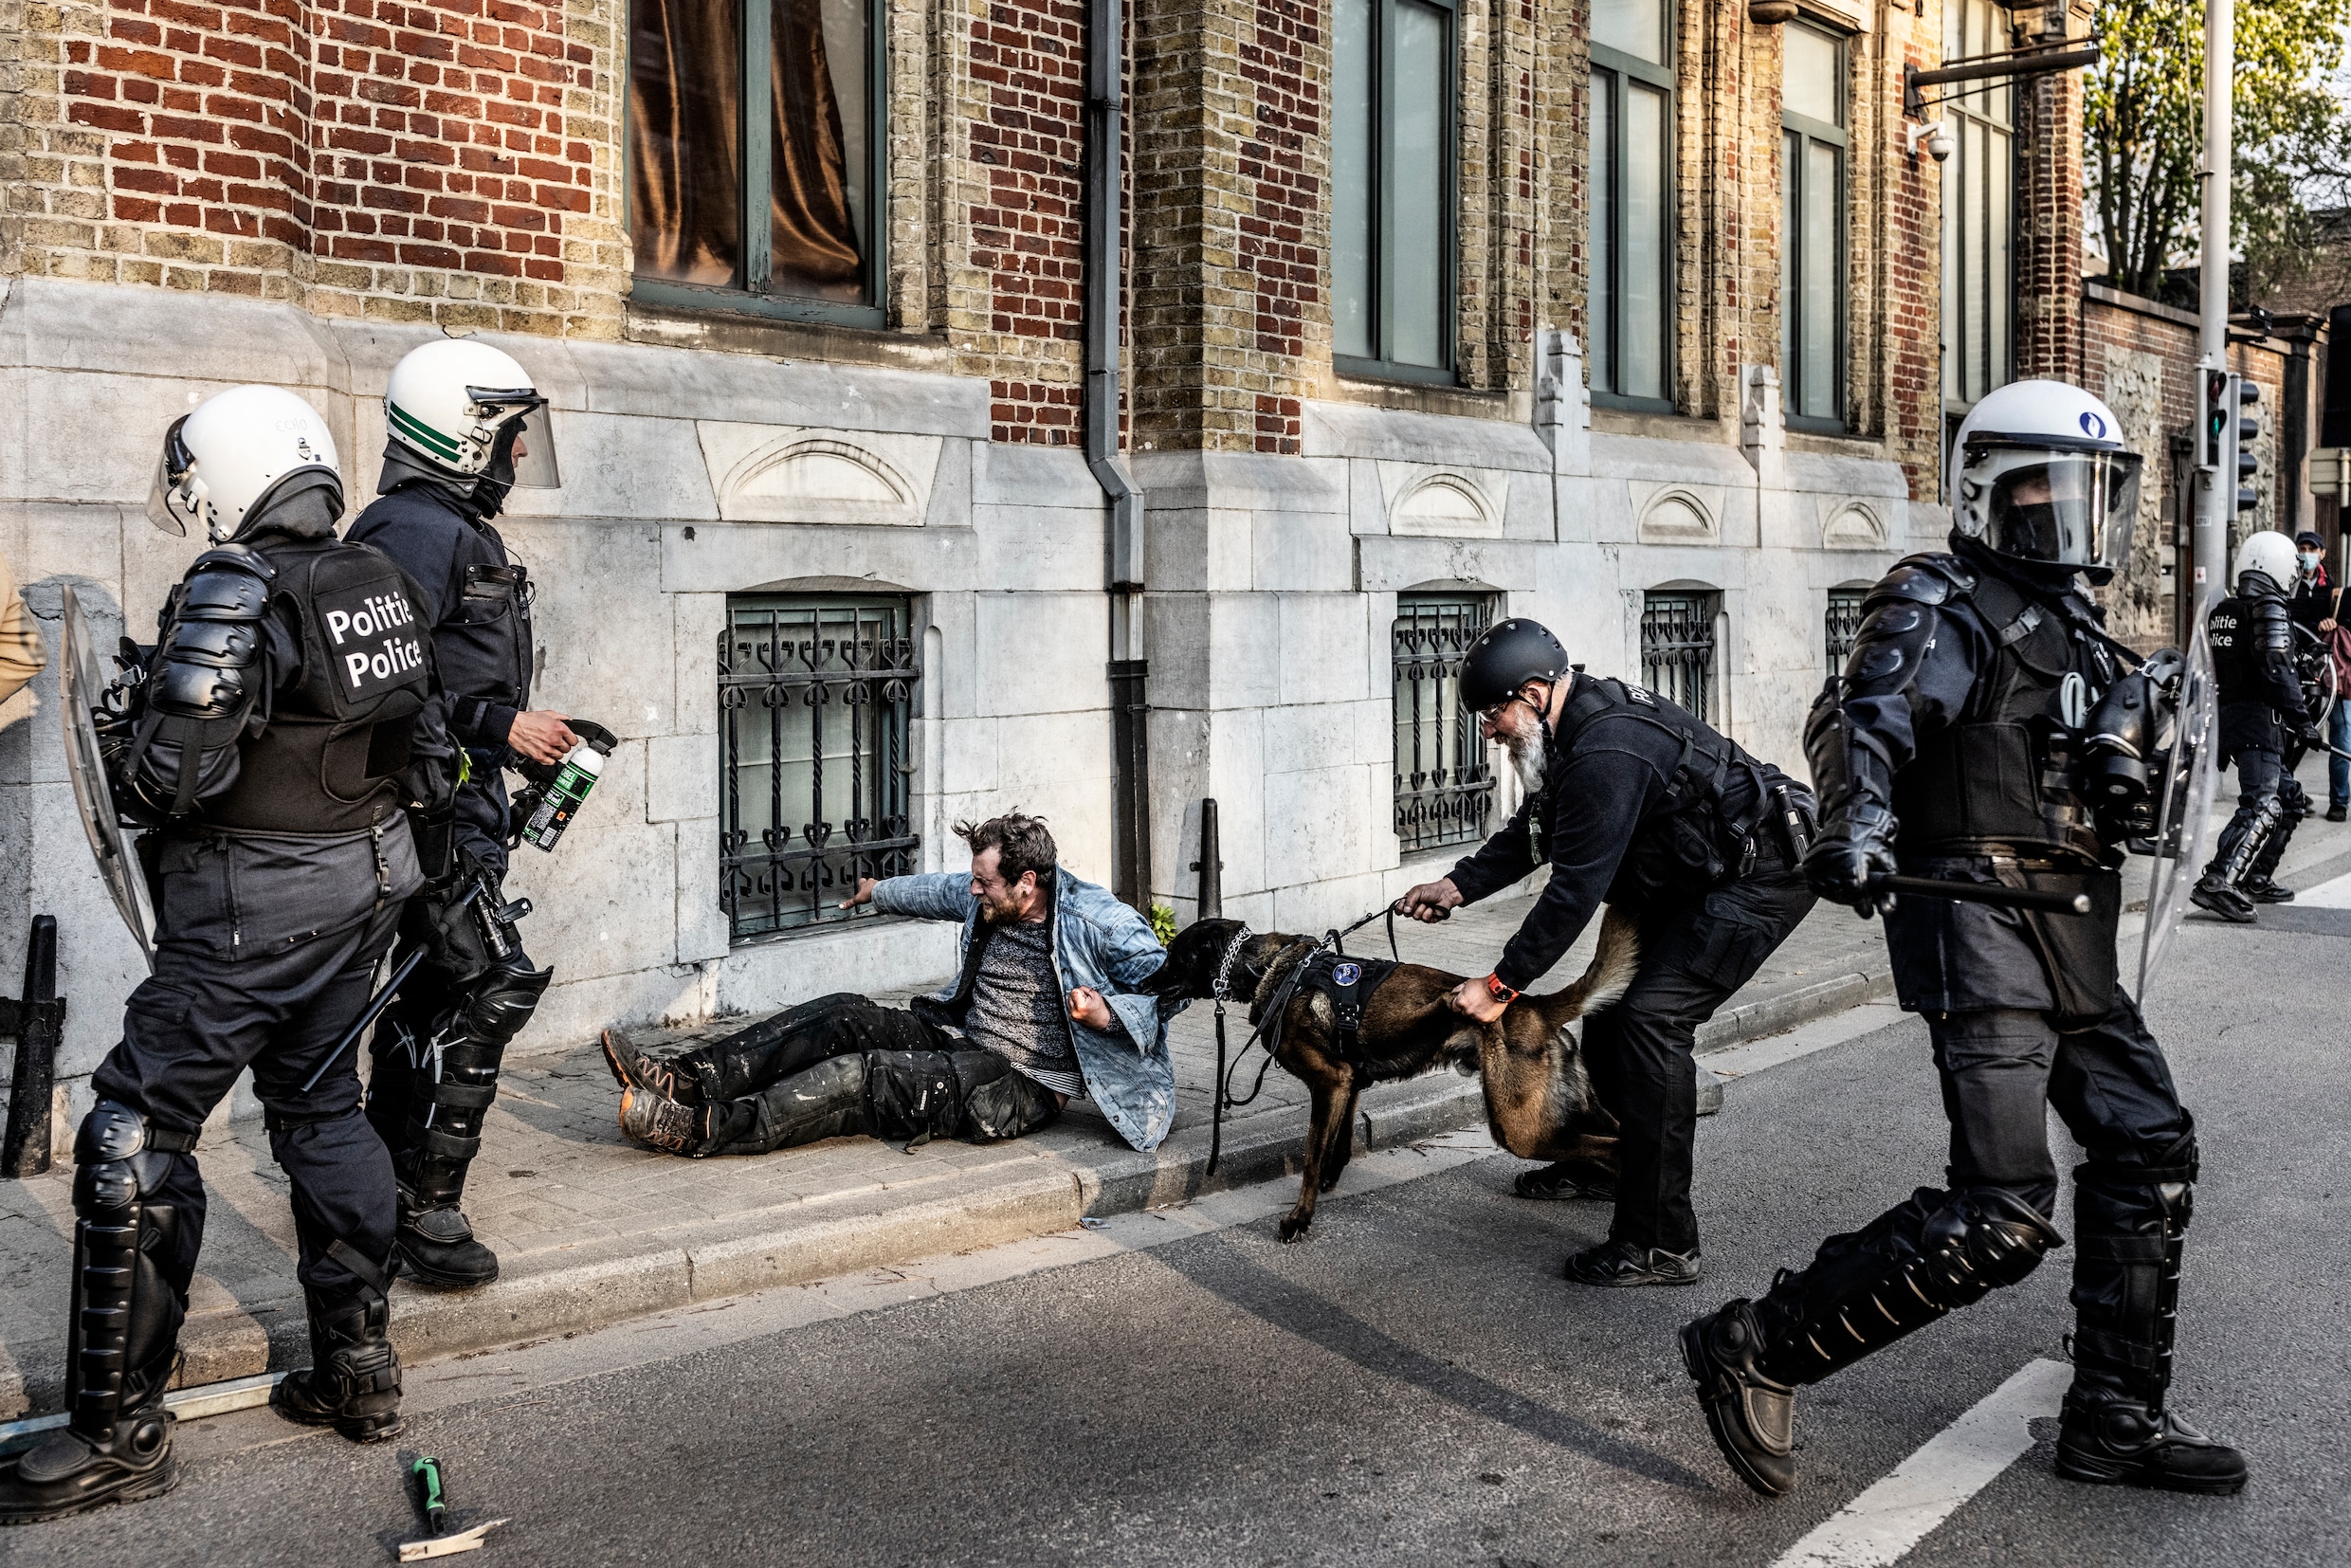 ‘Volkomen rechtmatig’: politie verdedigt omstreden optreden bij interventies La Boum 2